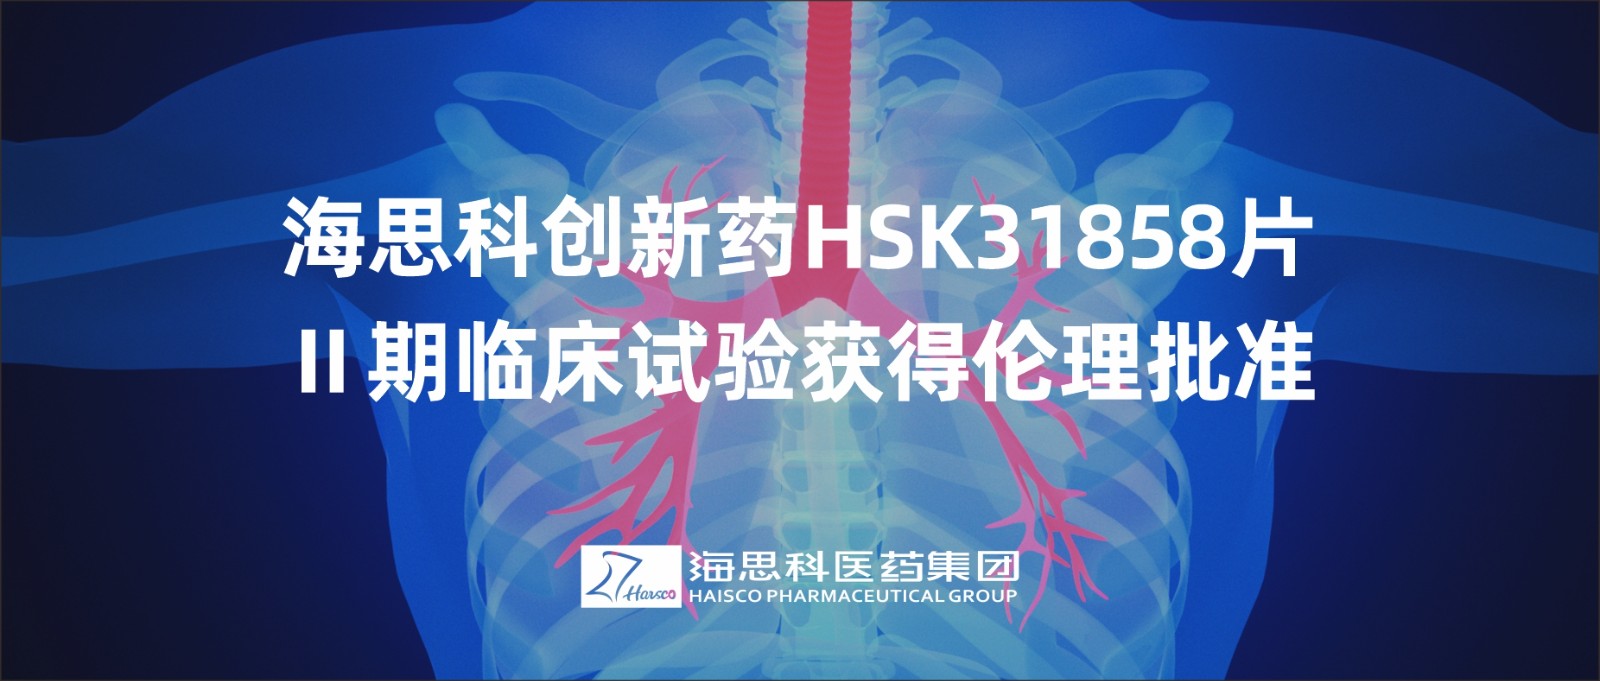 乐鱼游戏app正规版创新药HSK31858片Ⅱ期临床试验获得伦理批准